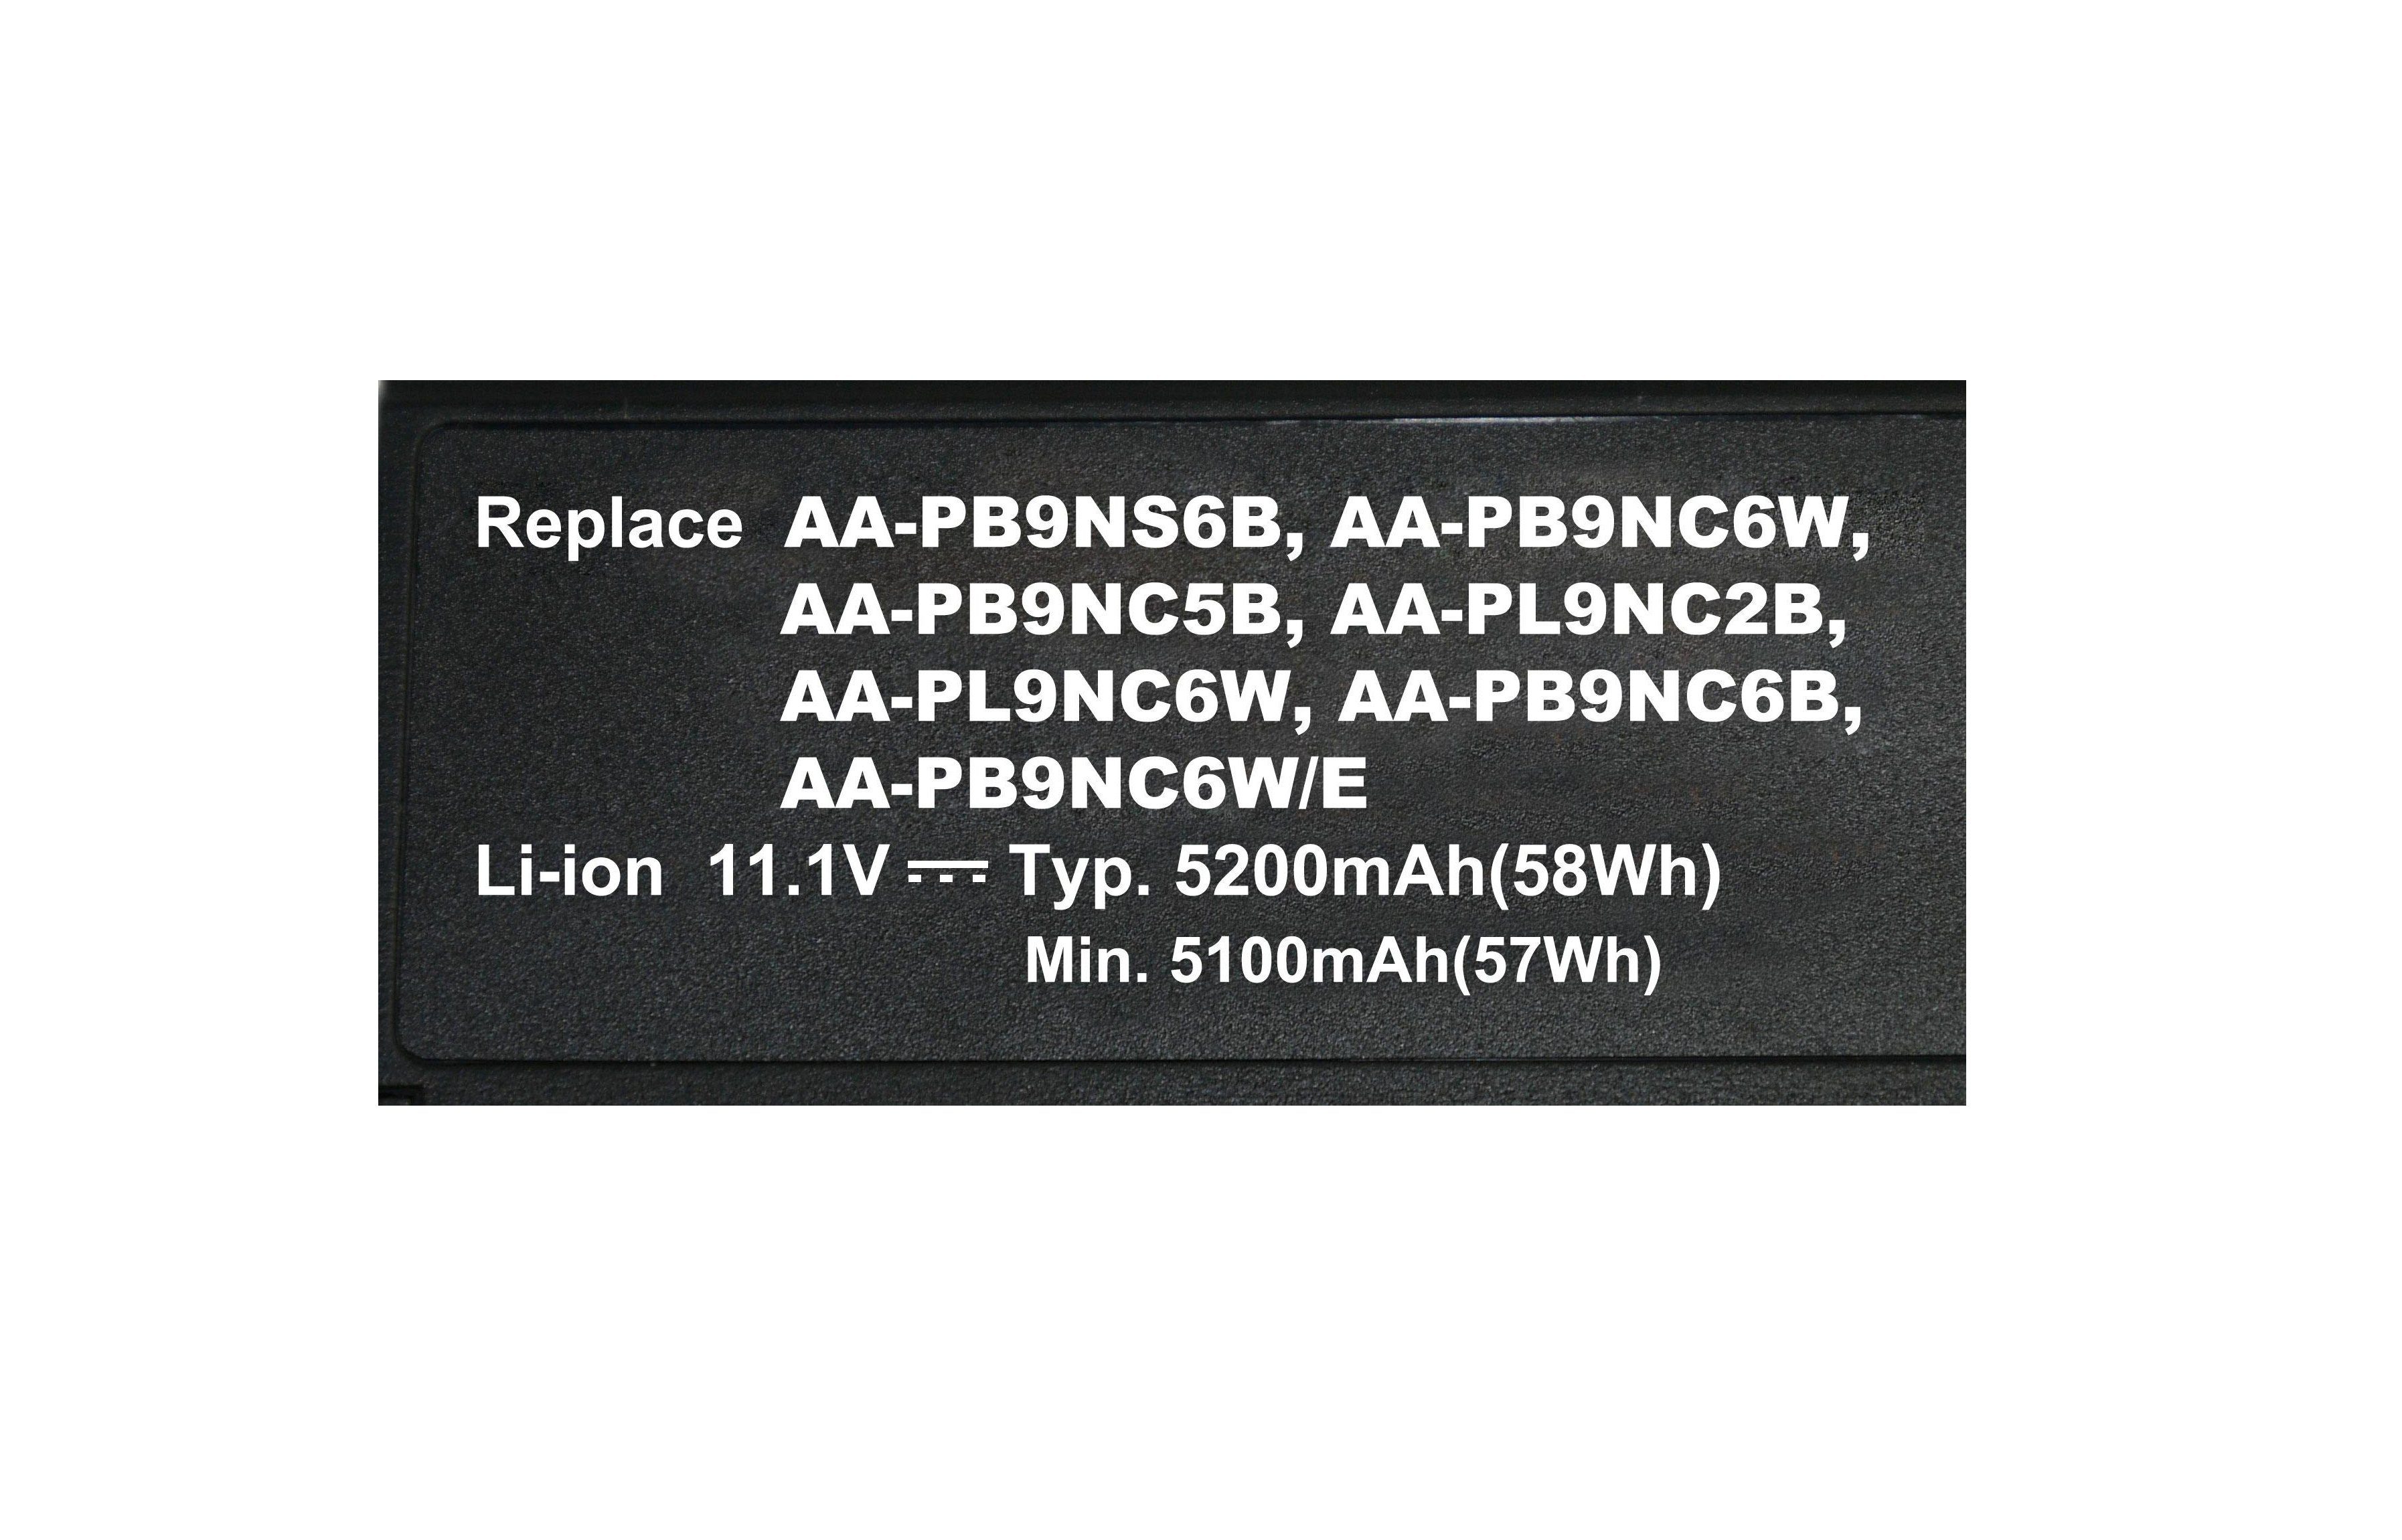 SAMSUNG für Laptop-Akku PowerSmart AA-PL9NC2B, AA-PB9NC6W, AA-PB9NS6B, AA-PB9NC5B, AA-PB9NC6B, NSM028.815 AA-PL9NC6W Ersatz mAh V) 5200 Li-Ion (11,1 AA-PB9NC6W/E,